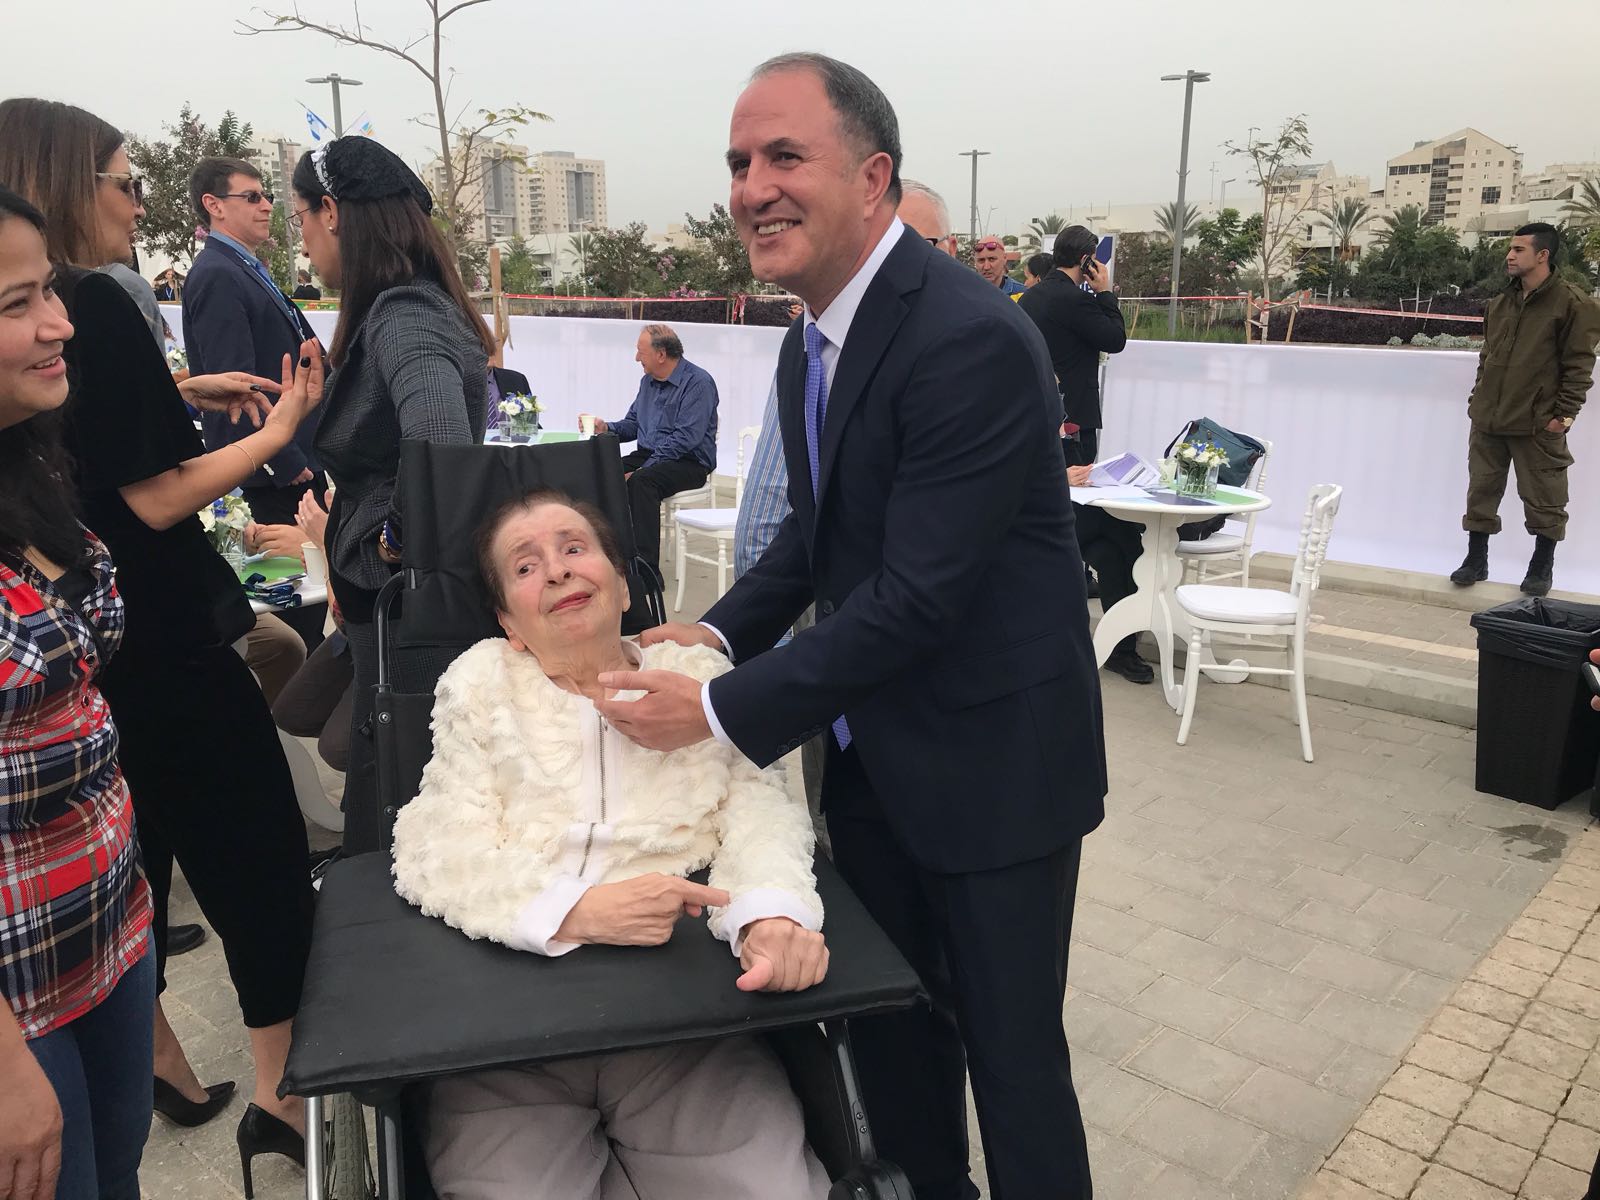 שושנה סנדלר ביחד עם ראש העיר בטקס פתיחת בית החולים